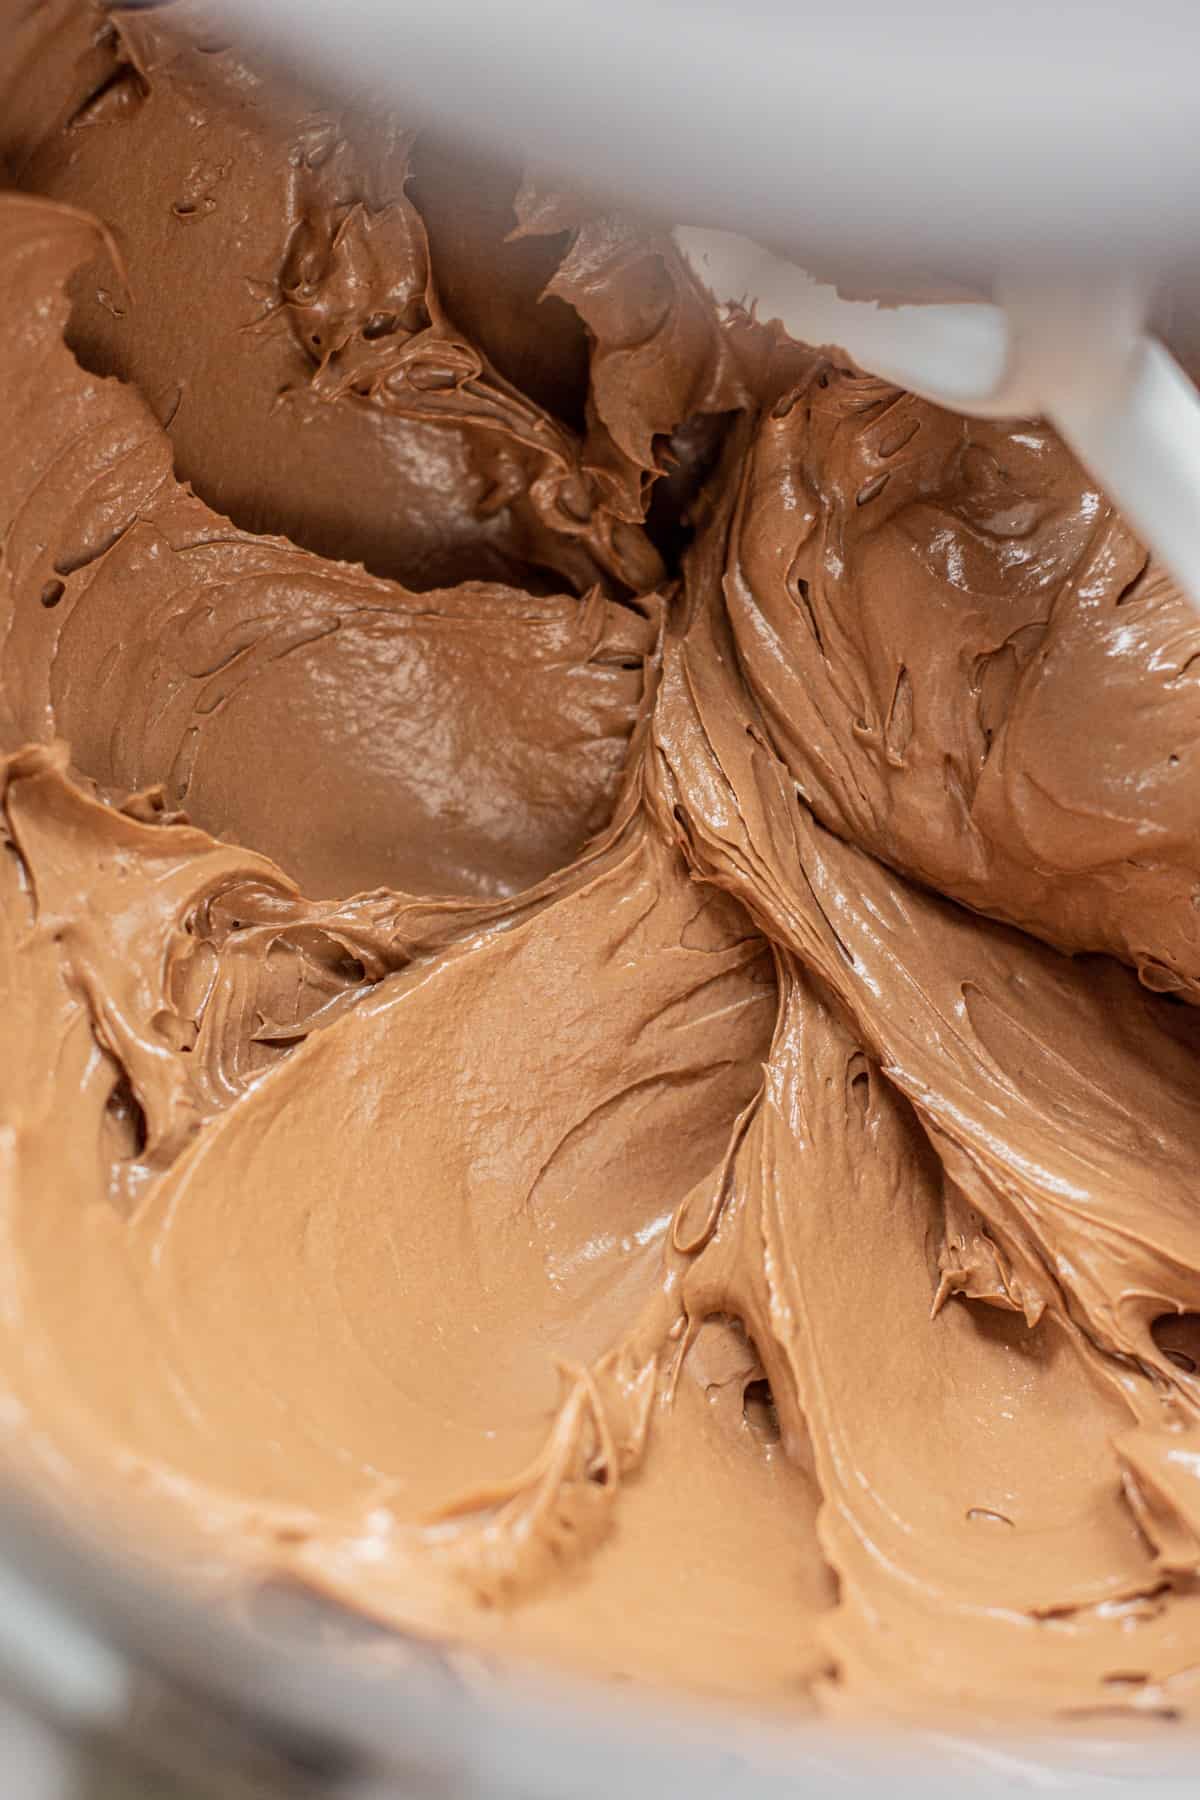 chocolate swiss meringue buttercream.